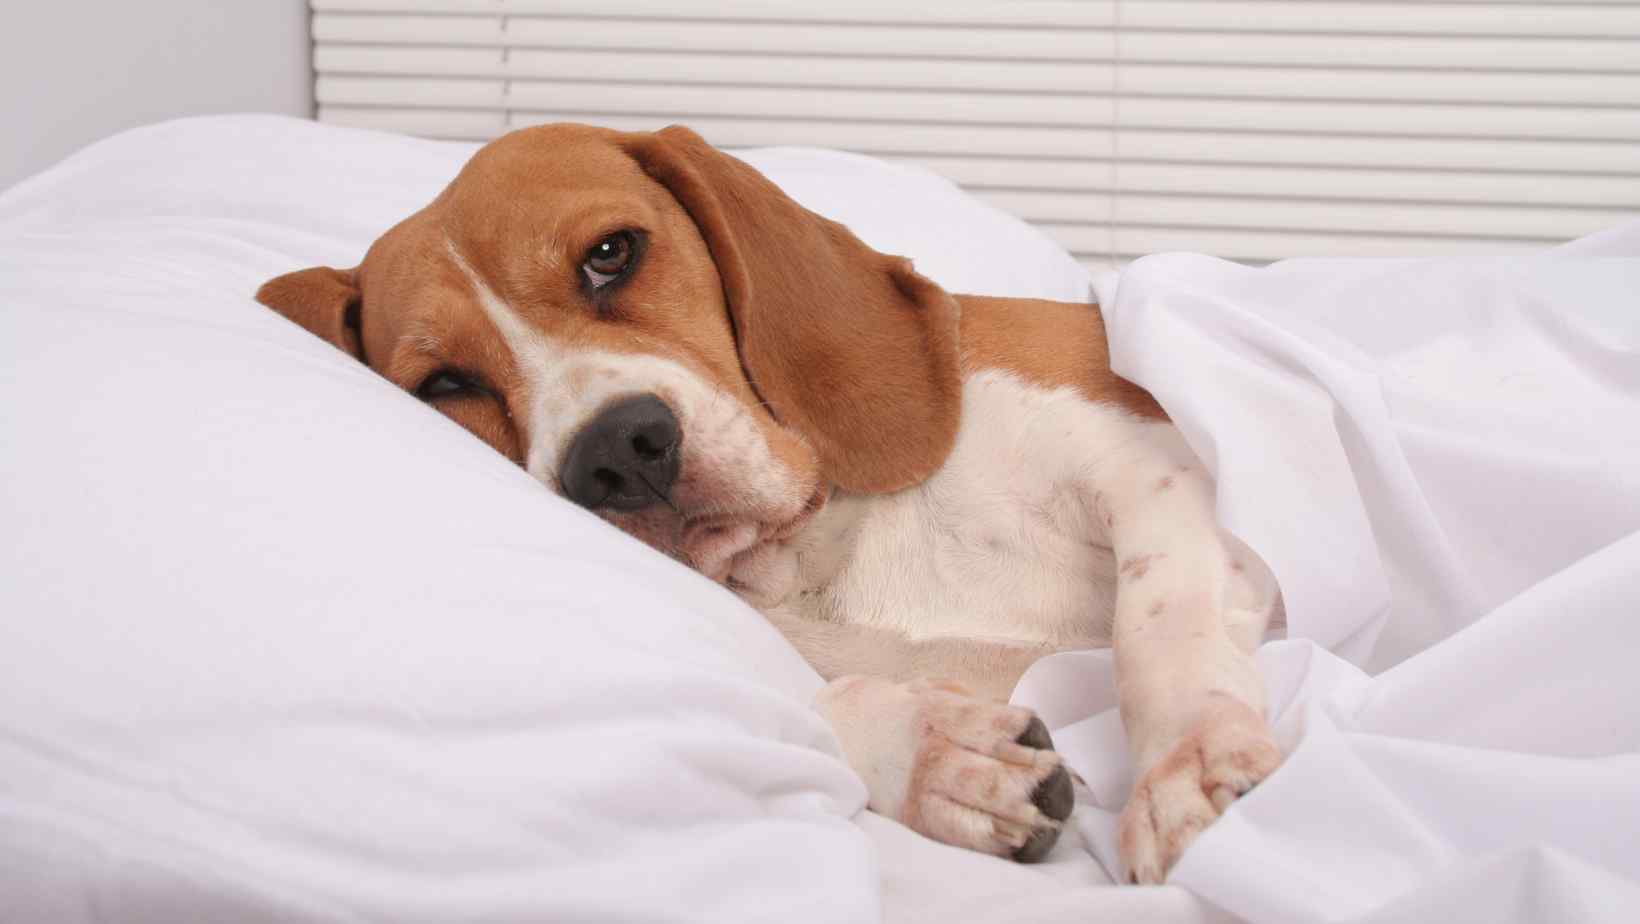 Mattress Firm Gives Away Dog Beds to Battle 'Junk Sleep